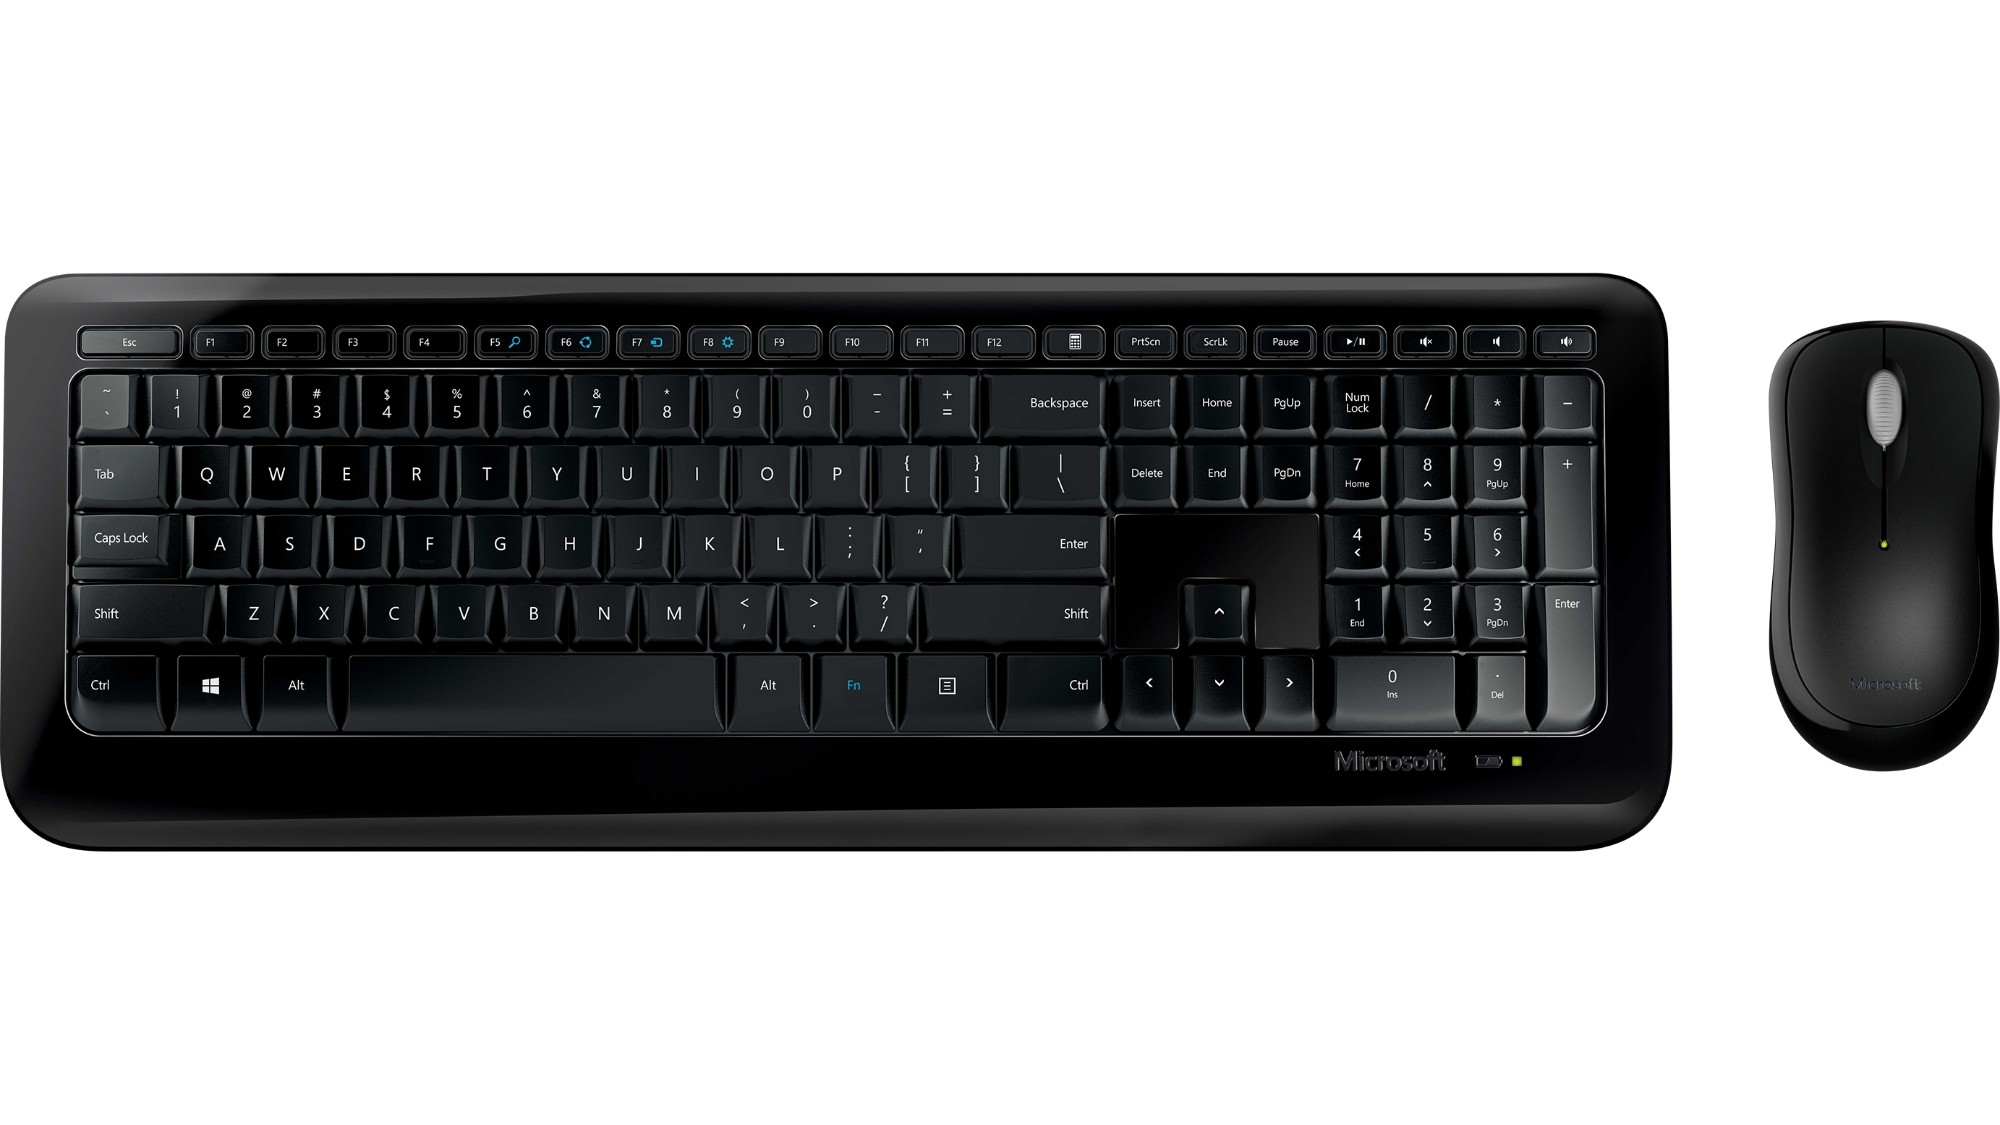 Microsoft Wireless Desktop 850 keyboard Mouse included RF Wireless Black